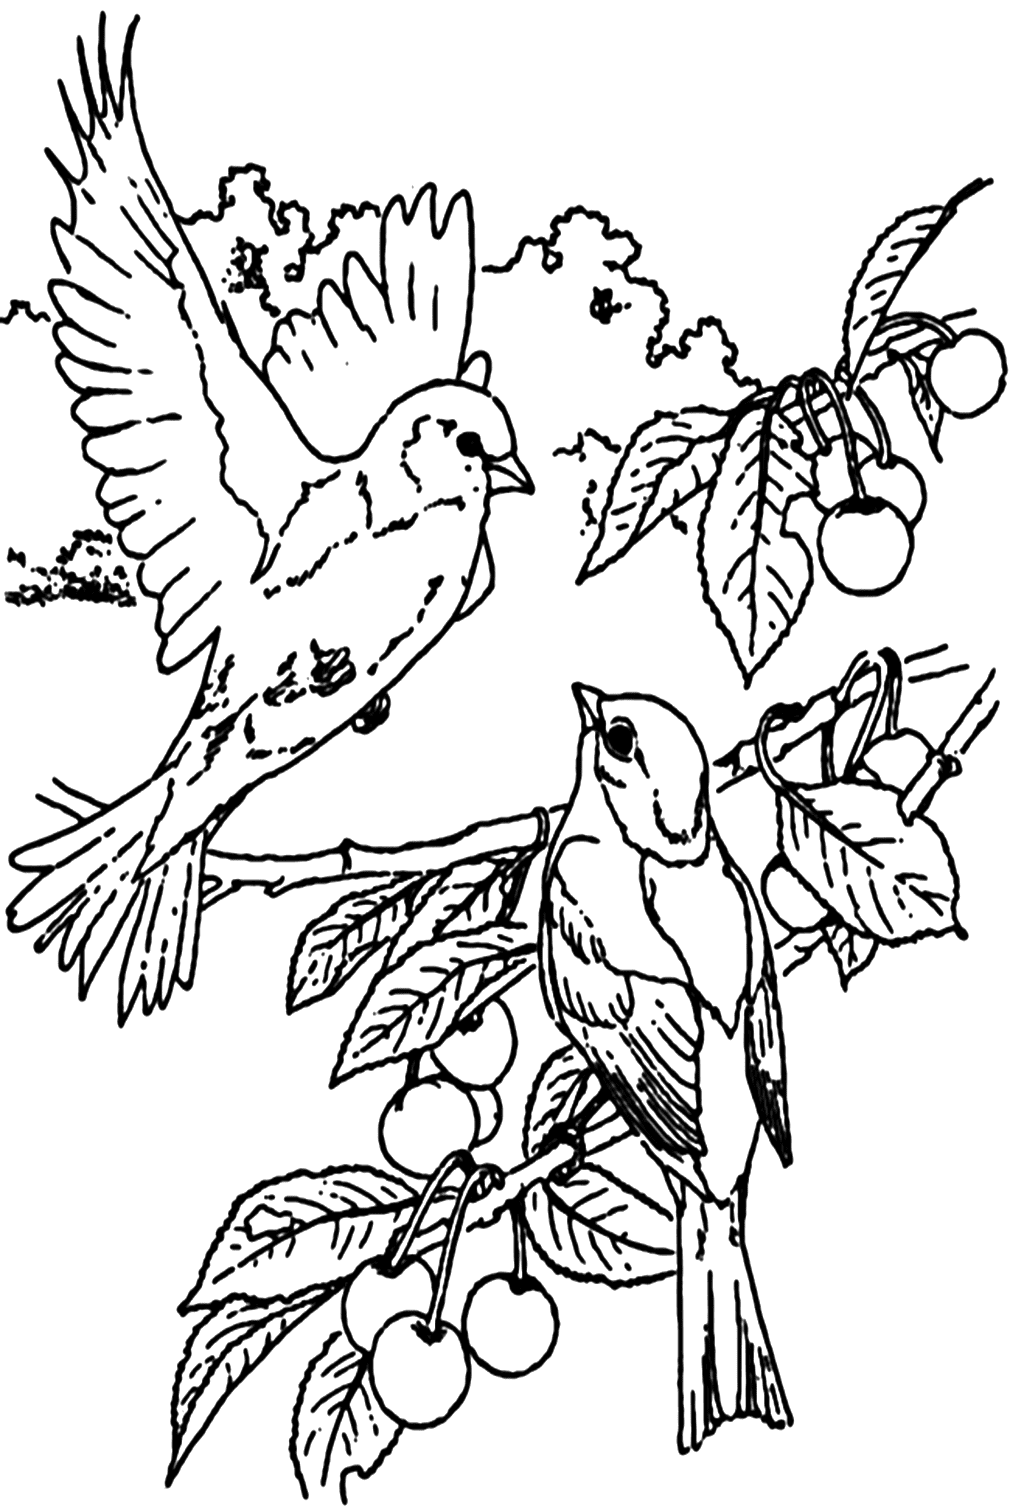 Imagen de Nightingale para colorear de Nightingale